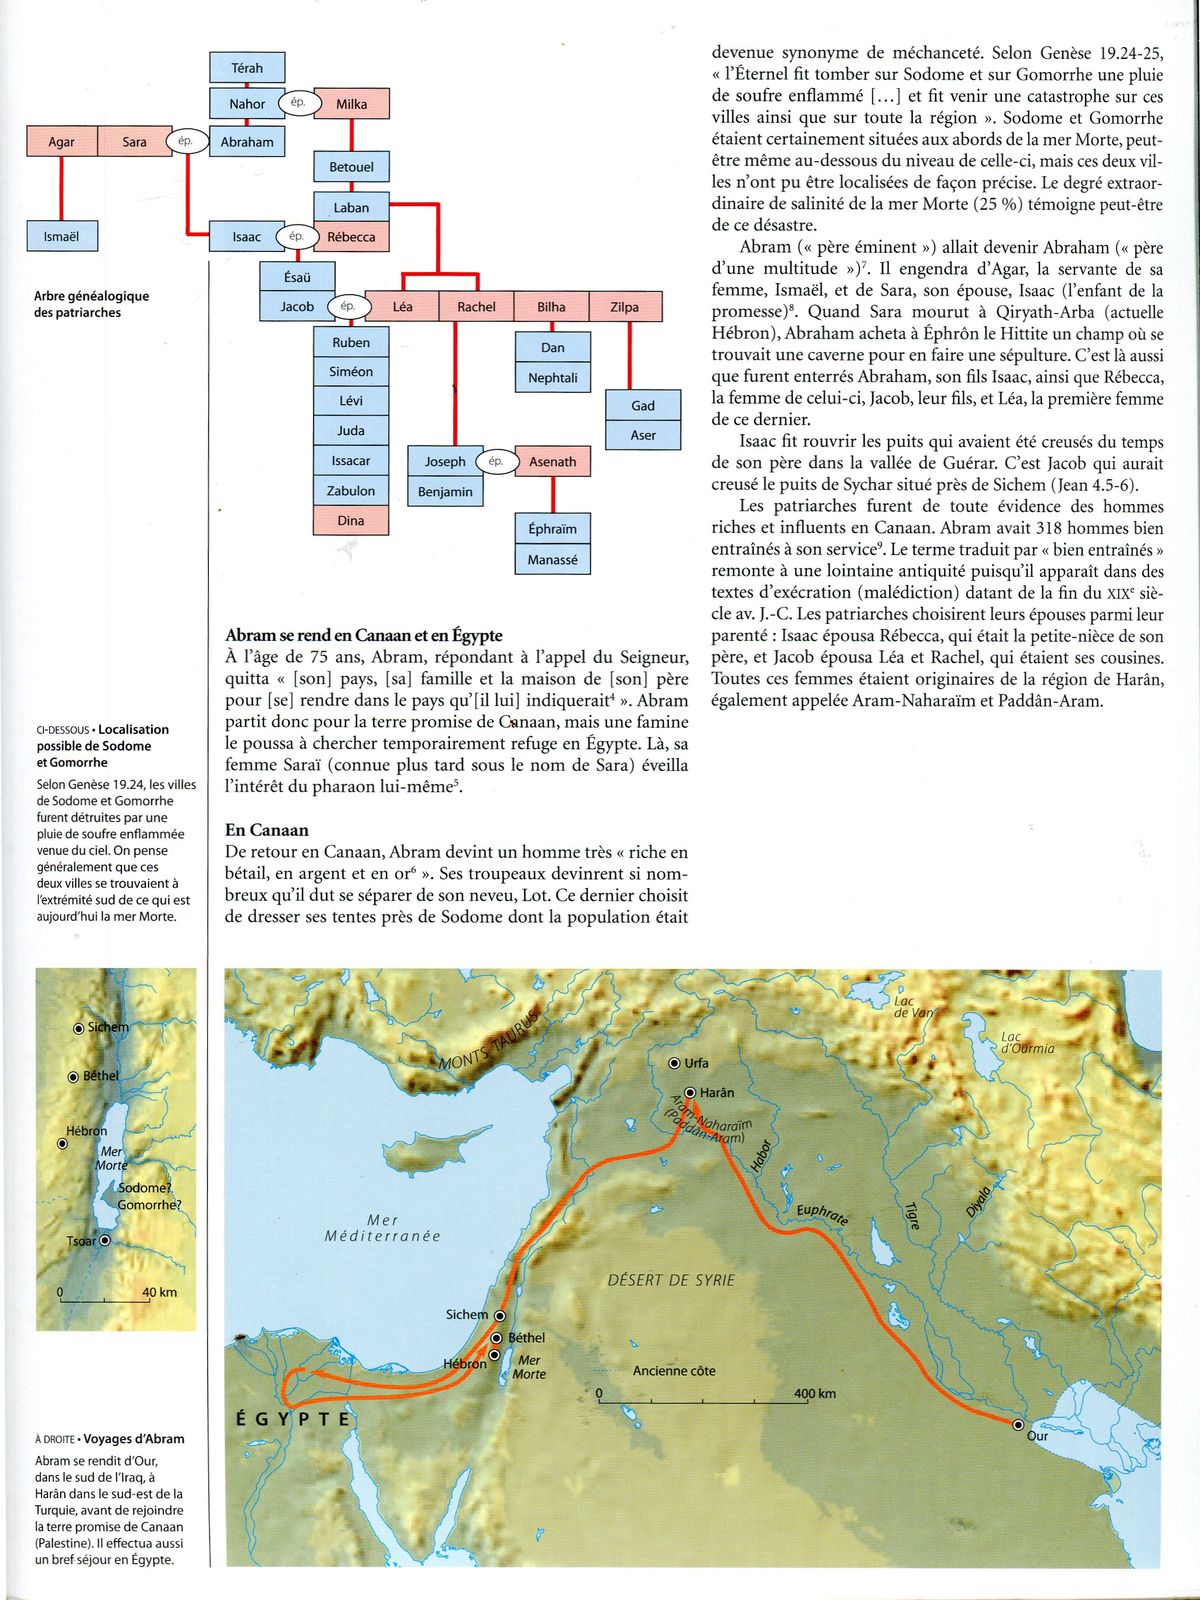 atlas de l'histoire biblique (bible)